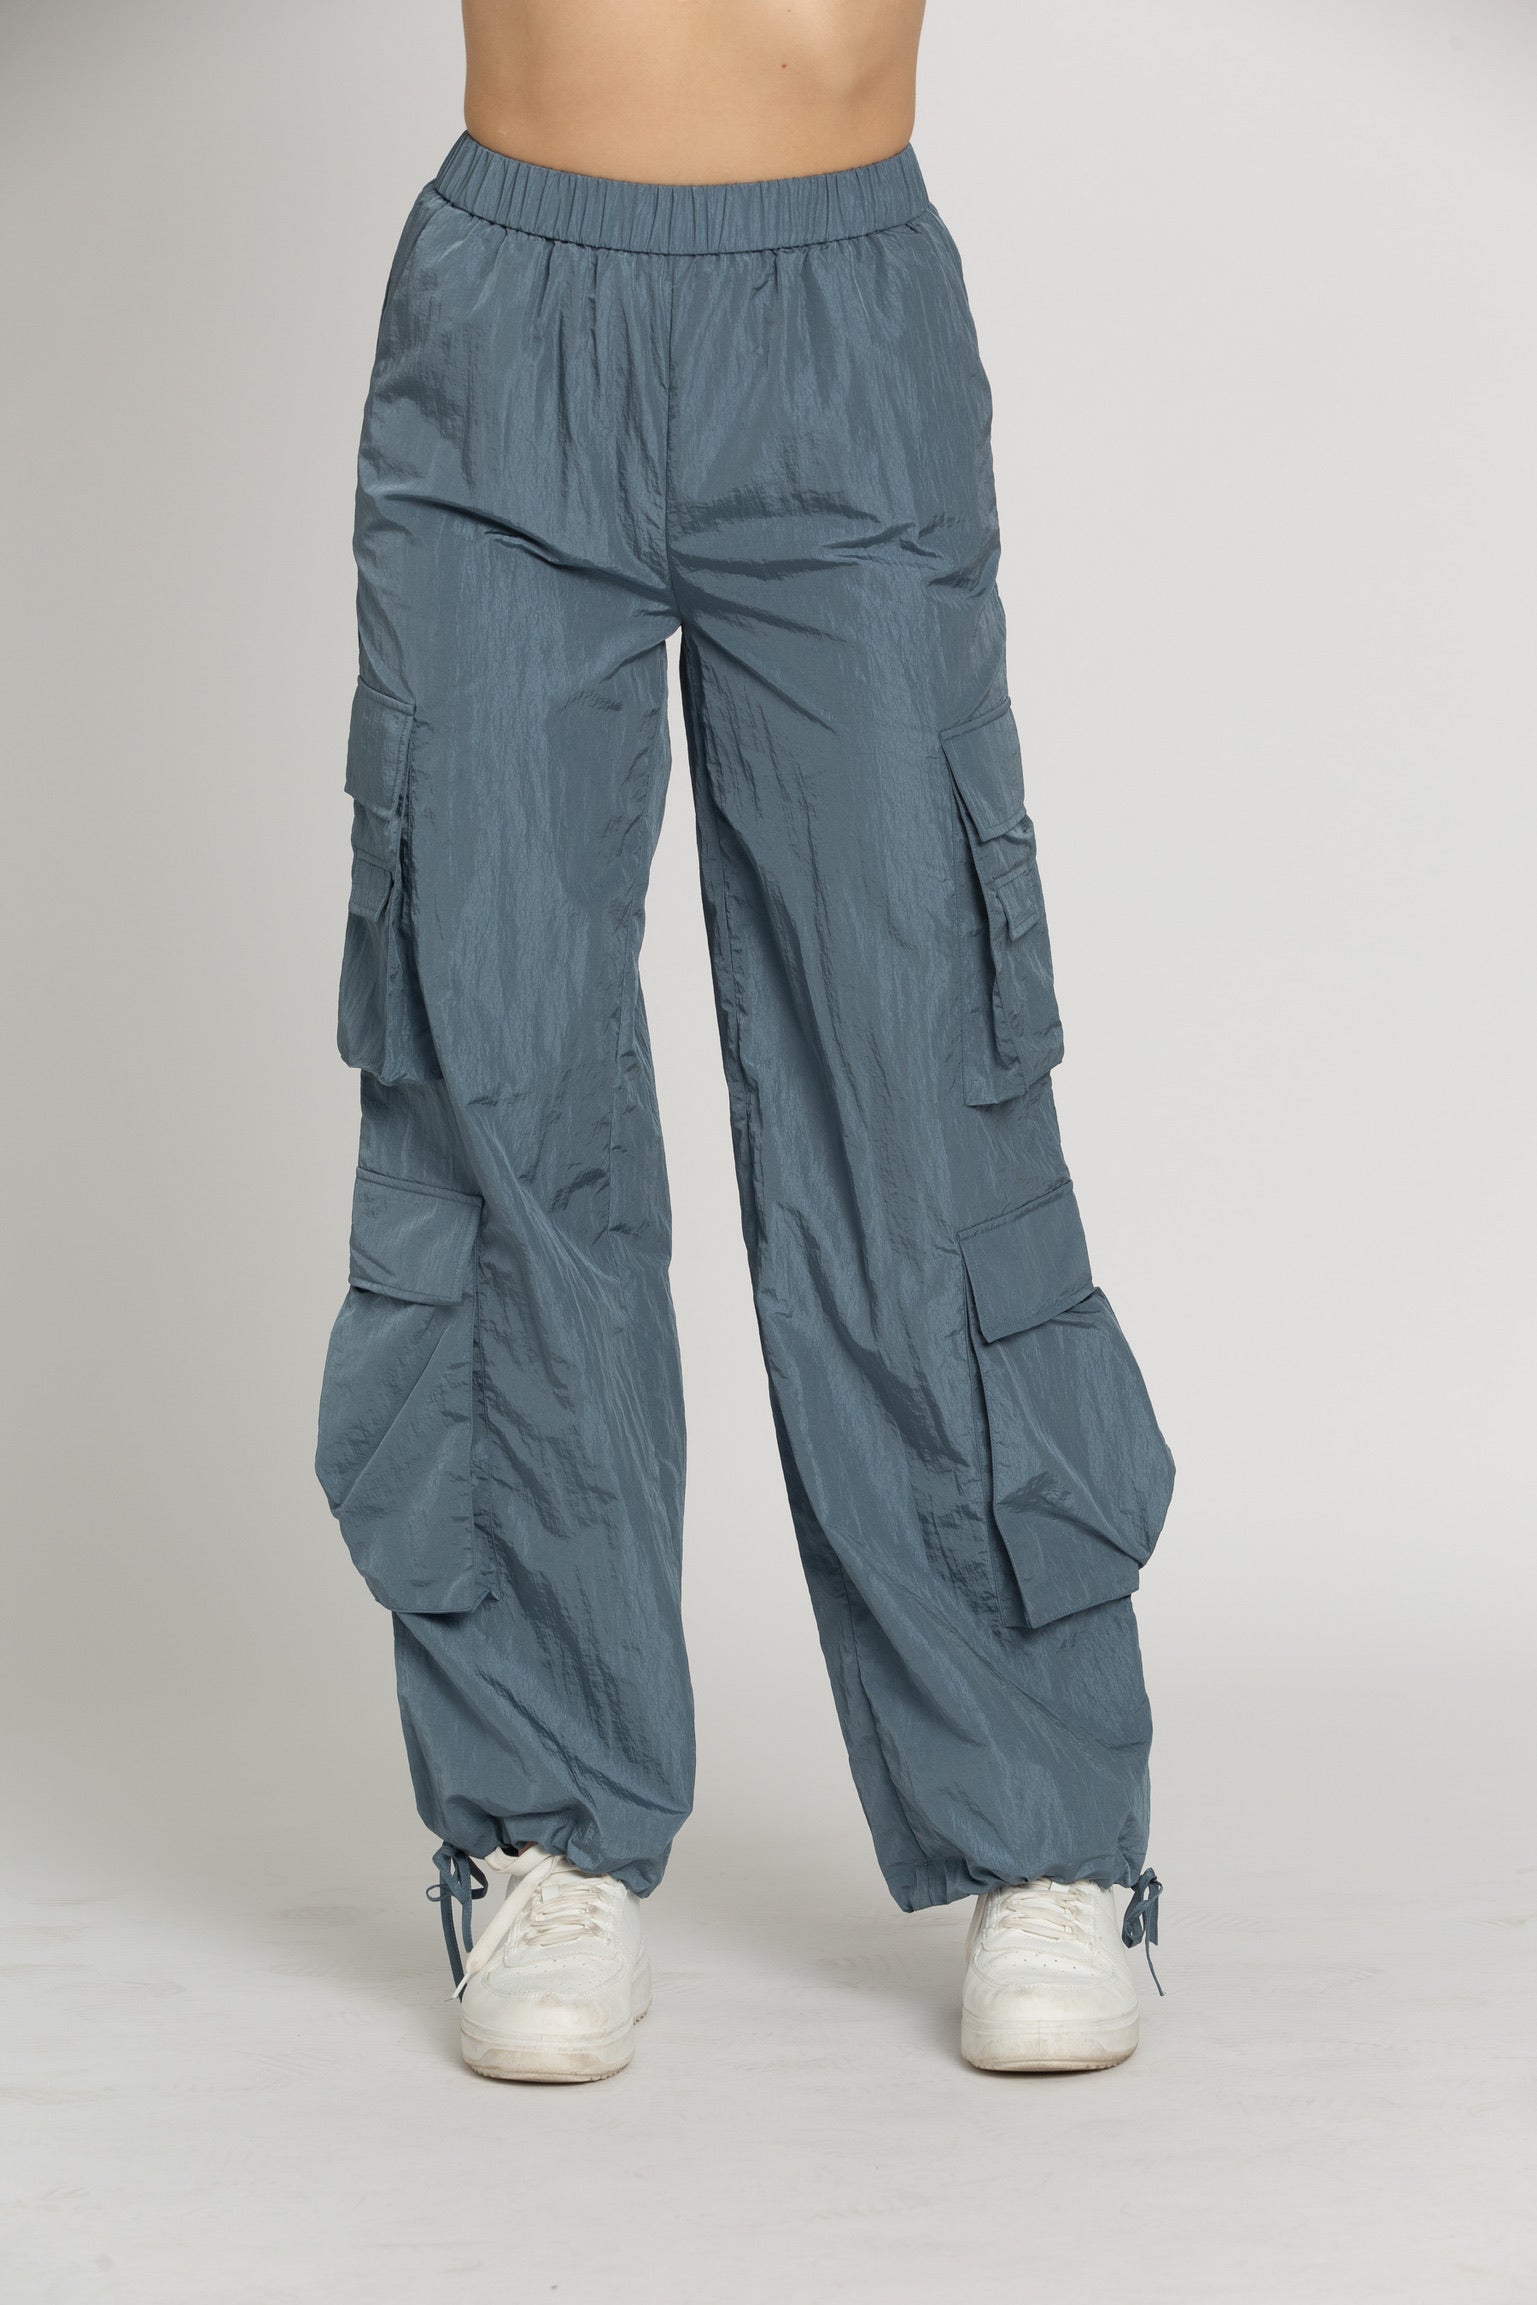 Ardene Regular Rise Parachute Pants in Light Blue, Size